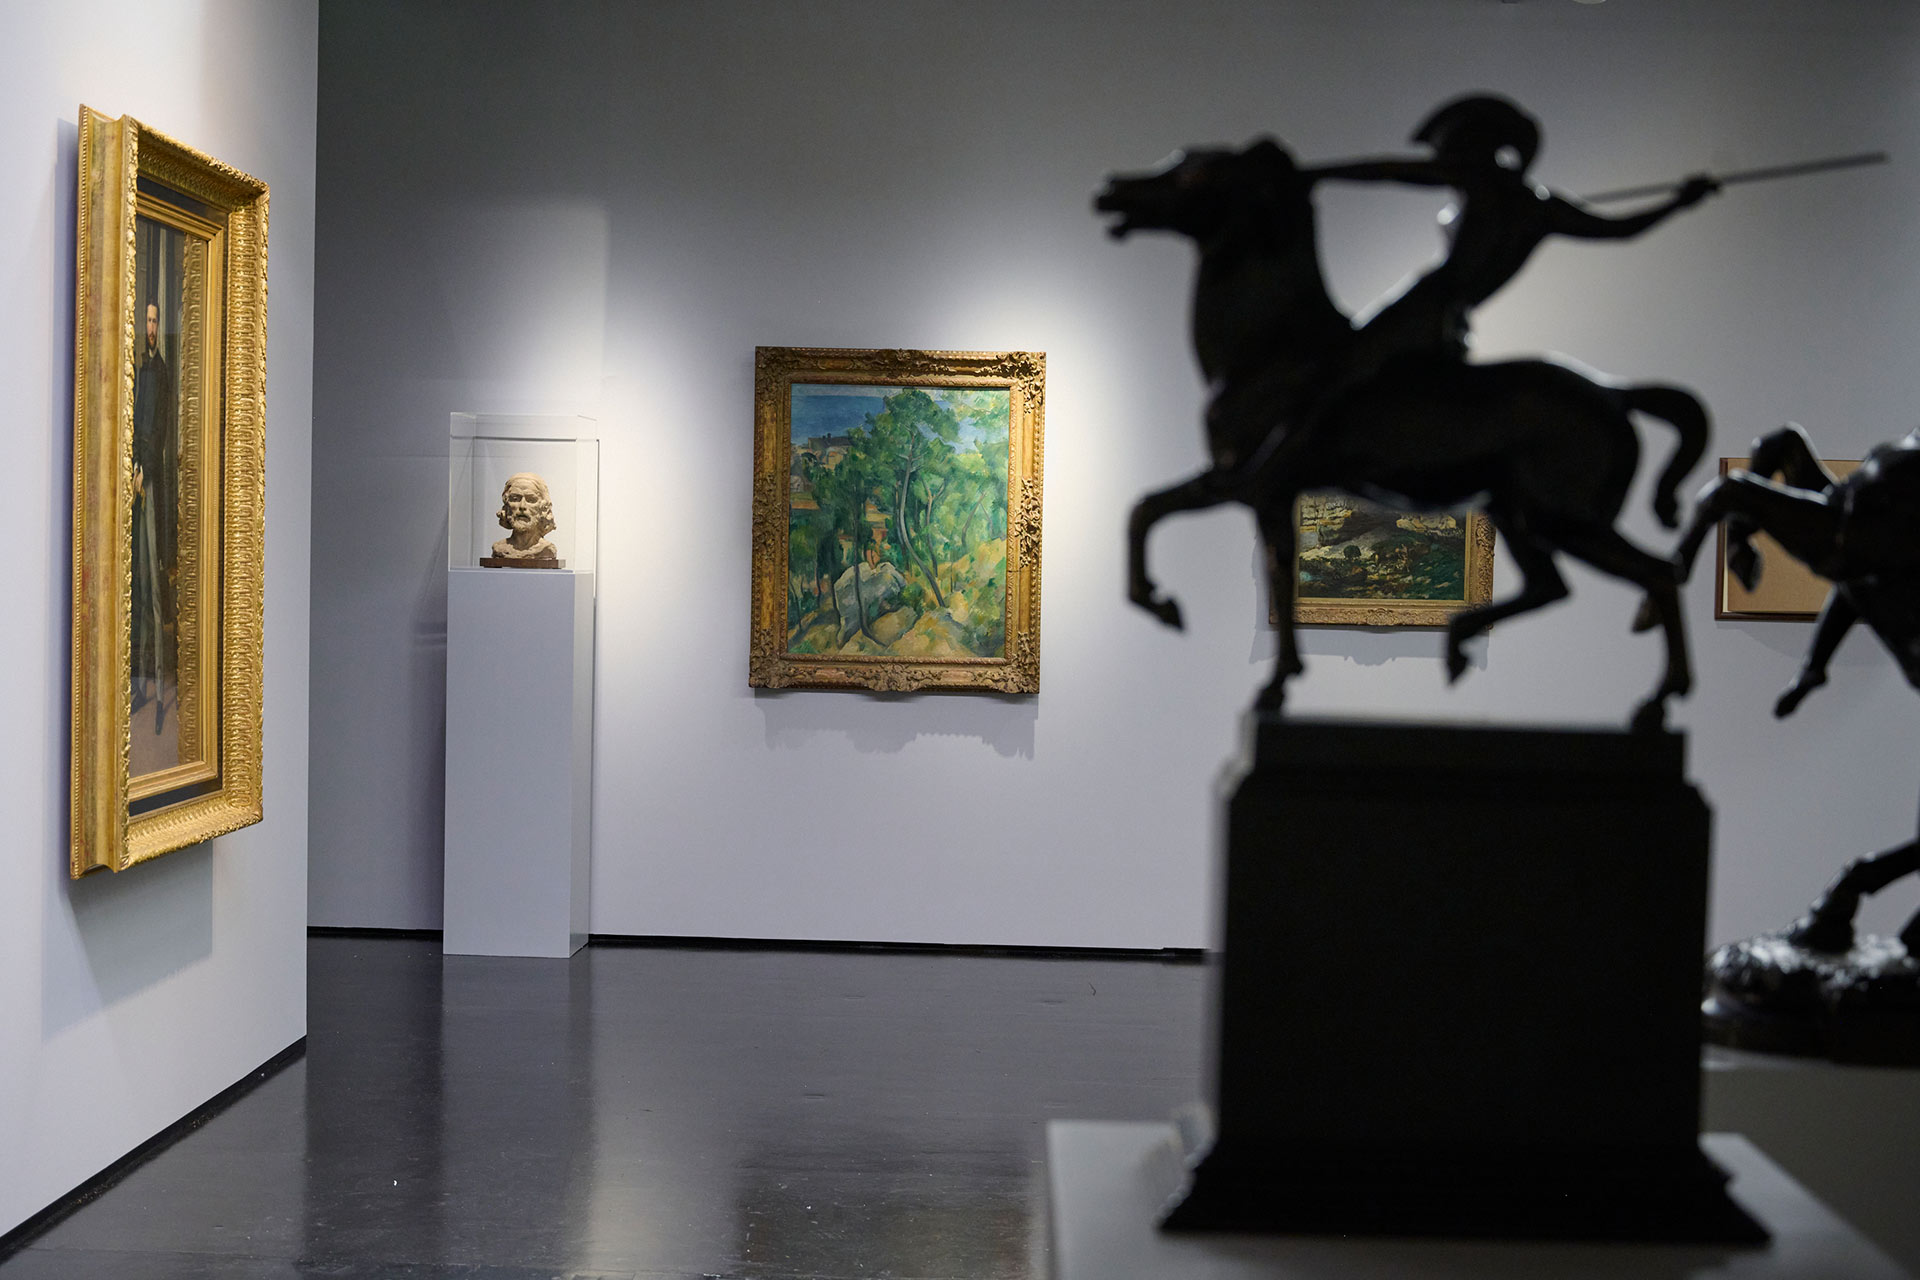 Blick in die Ausstellung KunsthalleKarlsruhe@ZKM neben kleinen Reiterskulpturen im Vordergrund sind im Hintergrund ein Gemälde Cézannes sowie eine Skulptur Rodins zu sehen